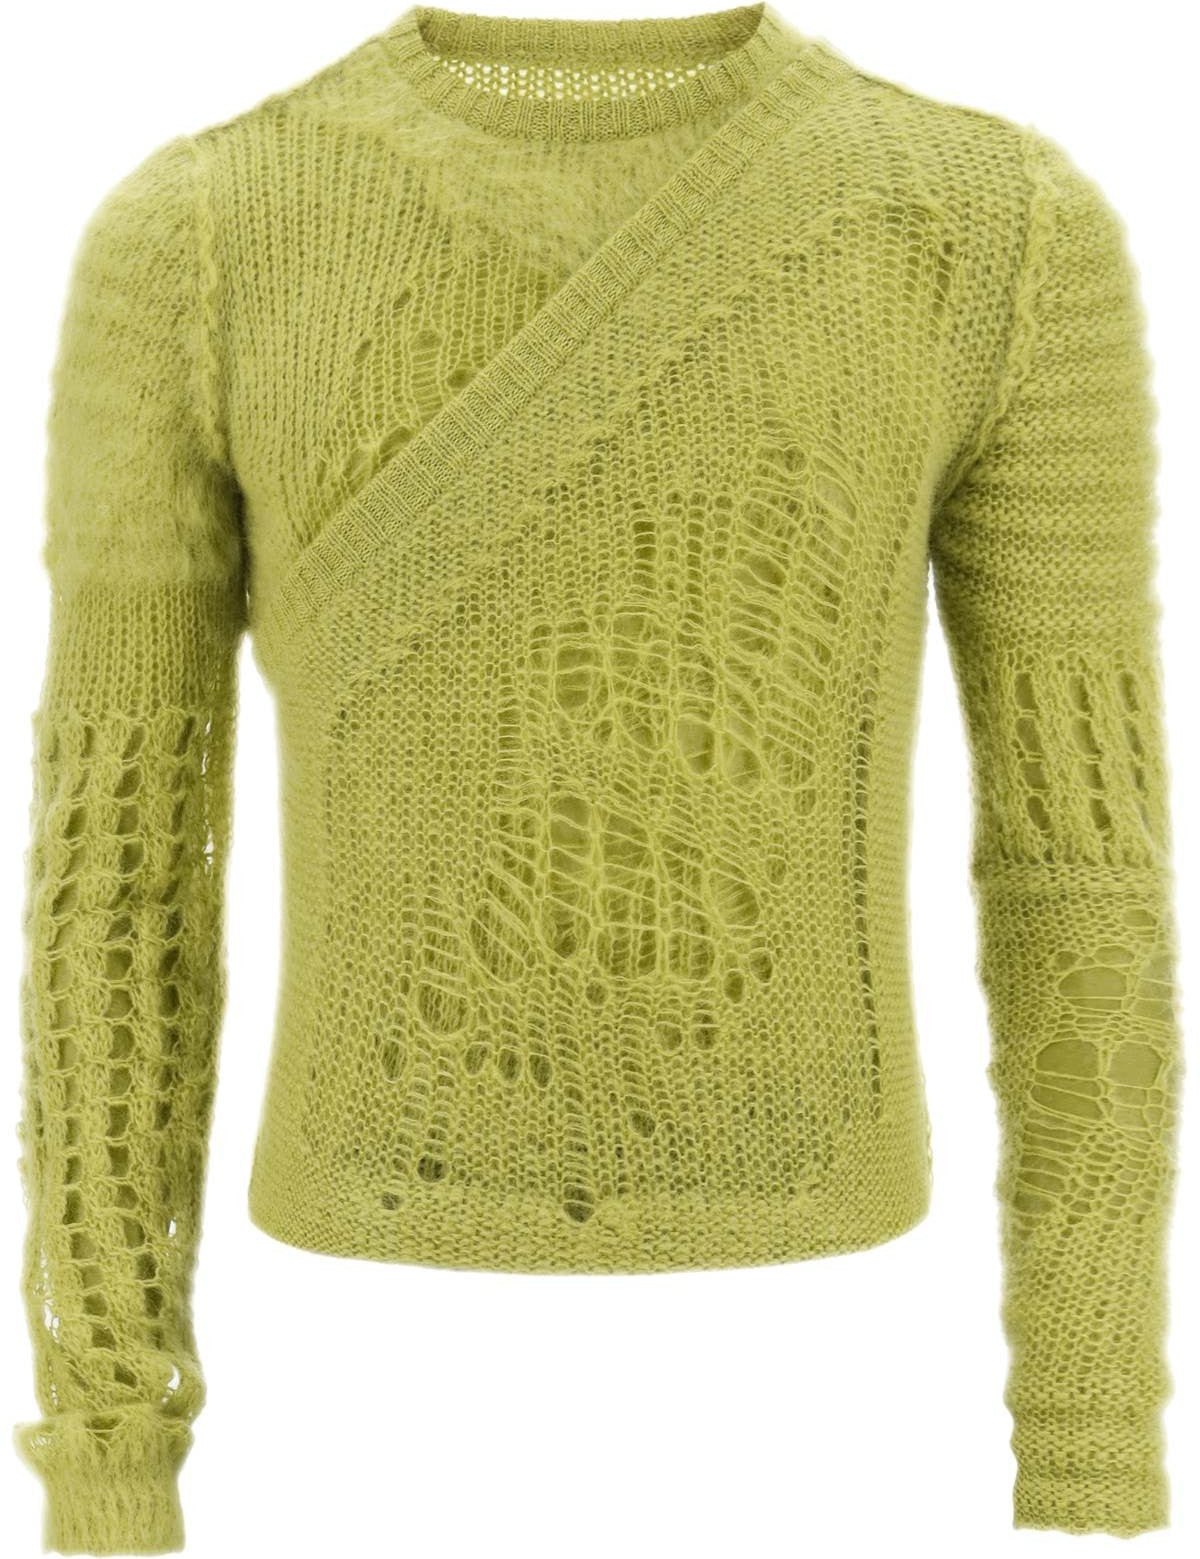 rick-owens-spider-banana-layered-sweater.jpg